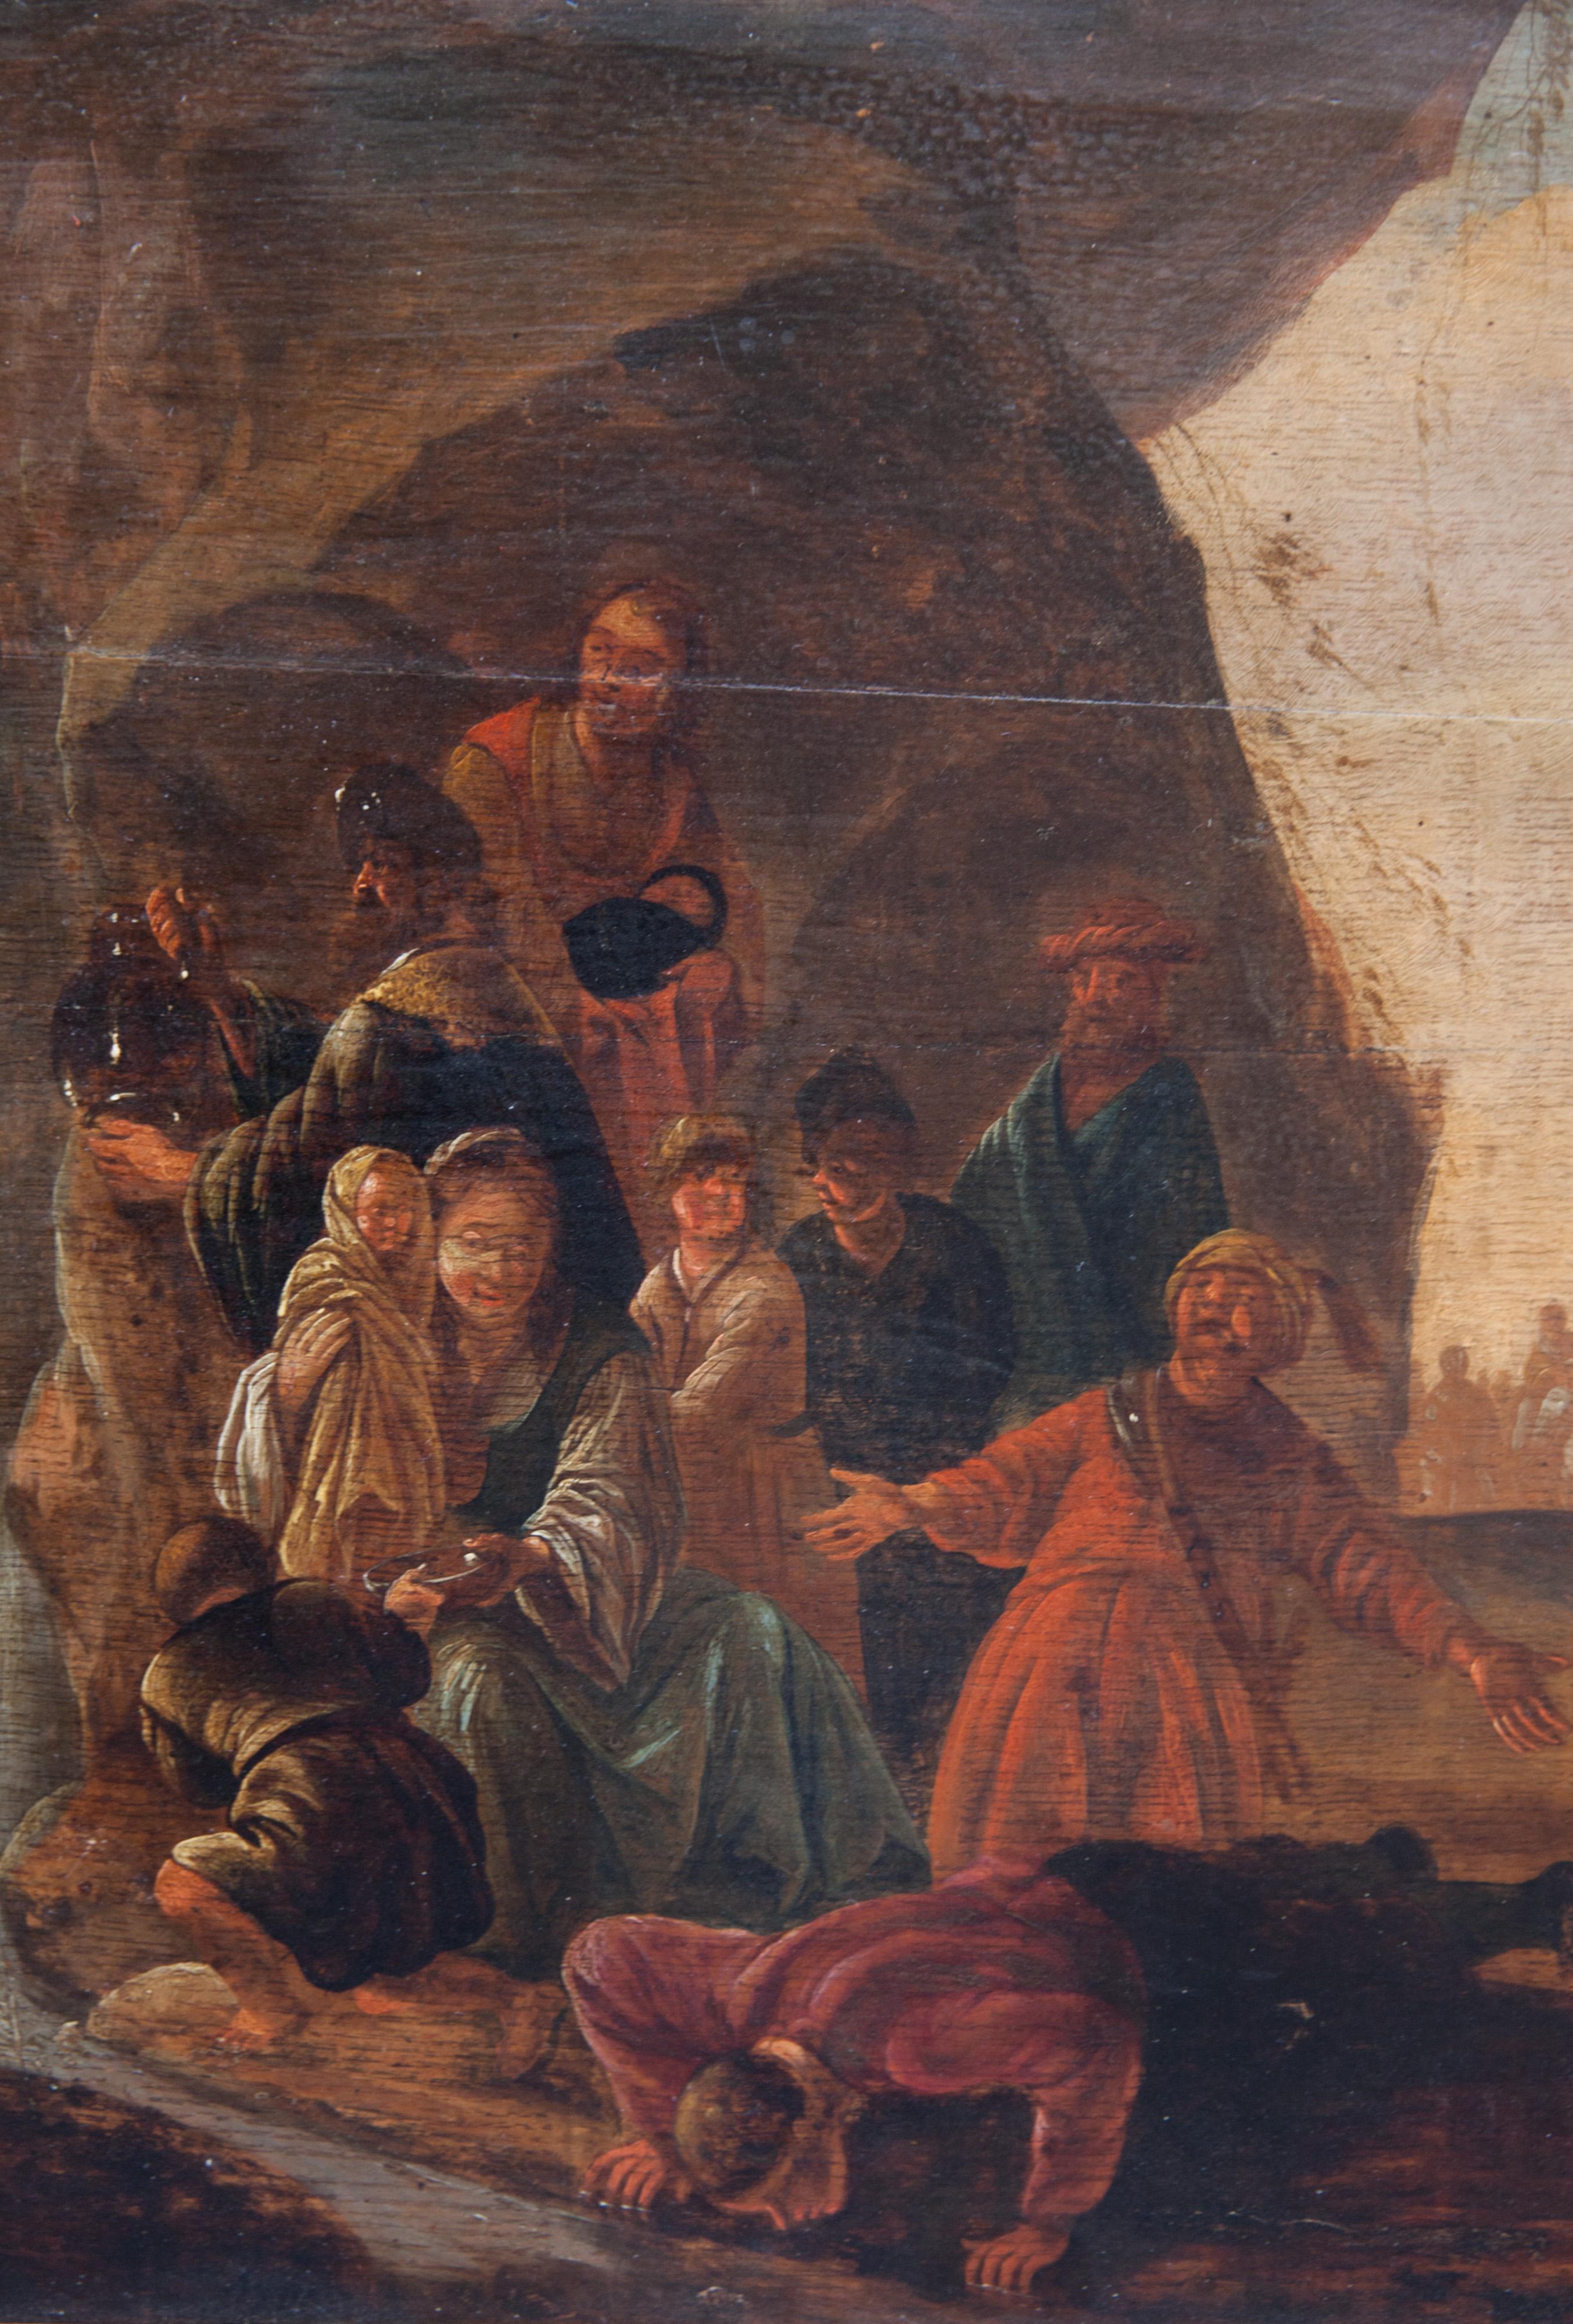 Moses fängt das Wasser vom Fels auf. XVII. Jahrhundert. Niederländische Schule. – Painting von Jacob de Wet